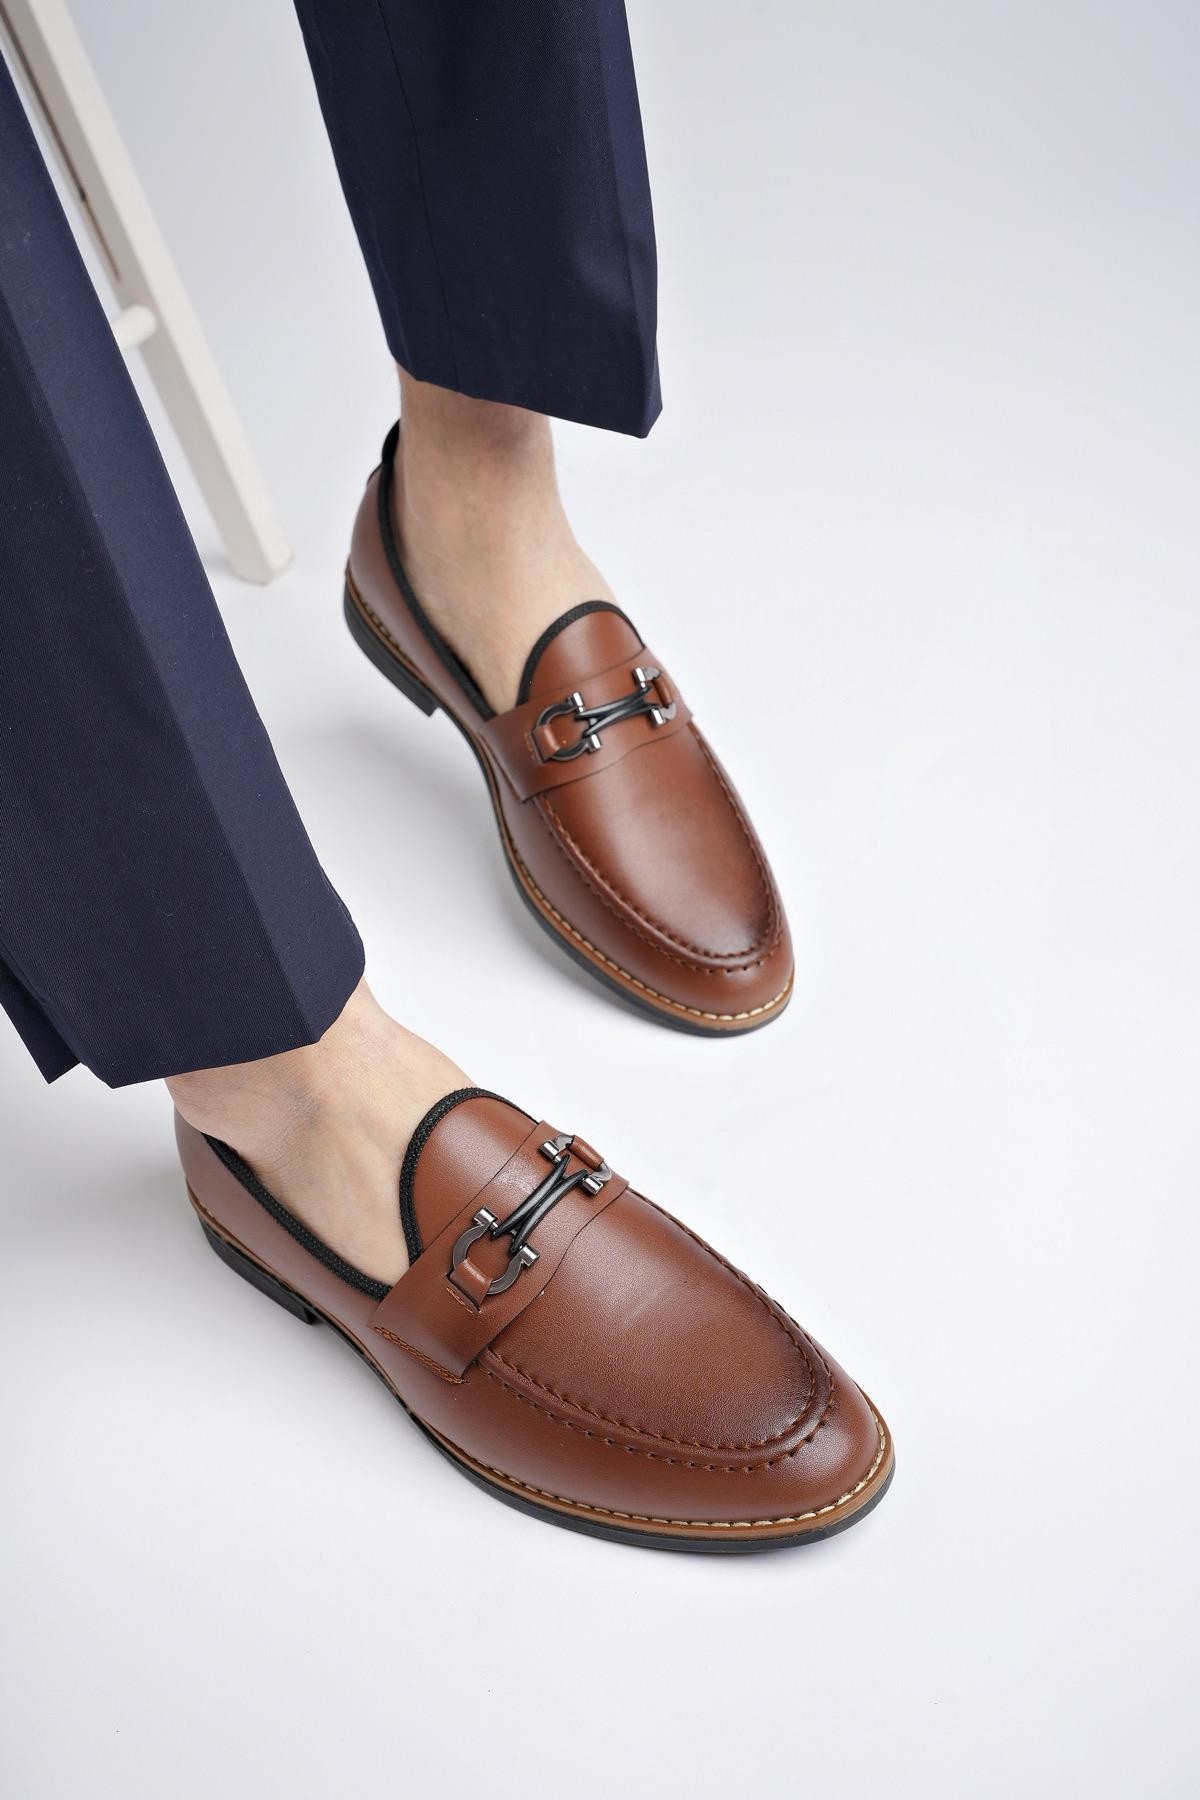 Muggo M7702 Garantili Erkek Günlük Klasik Casual Ayakkabı - TABA